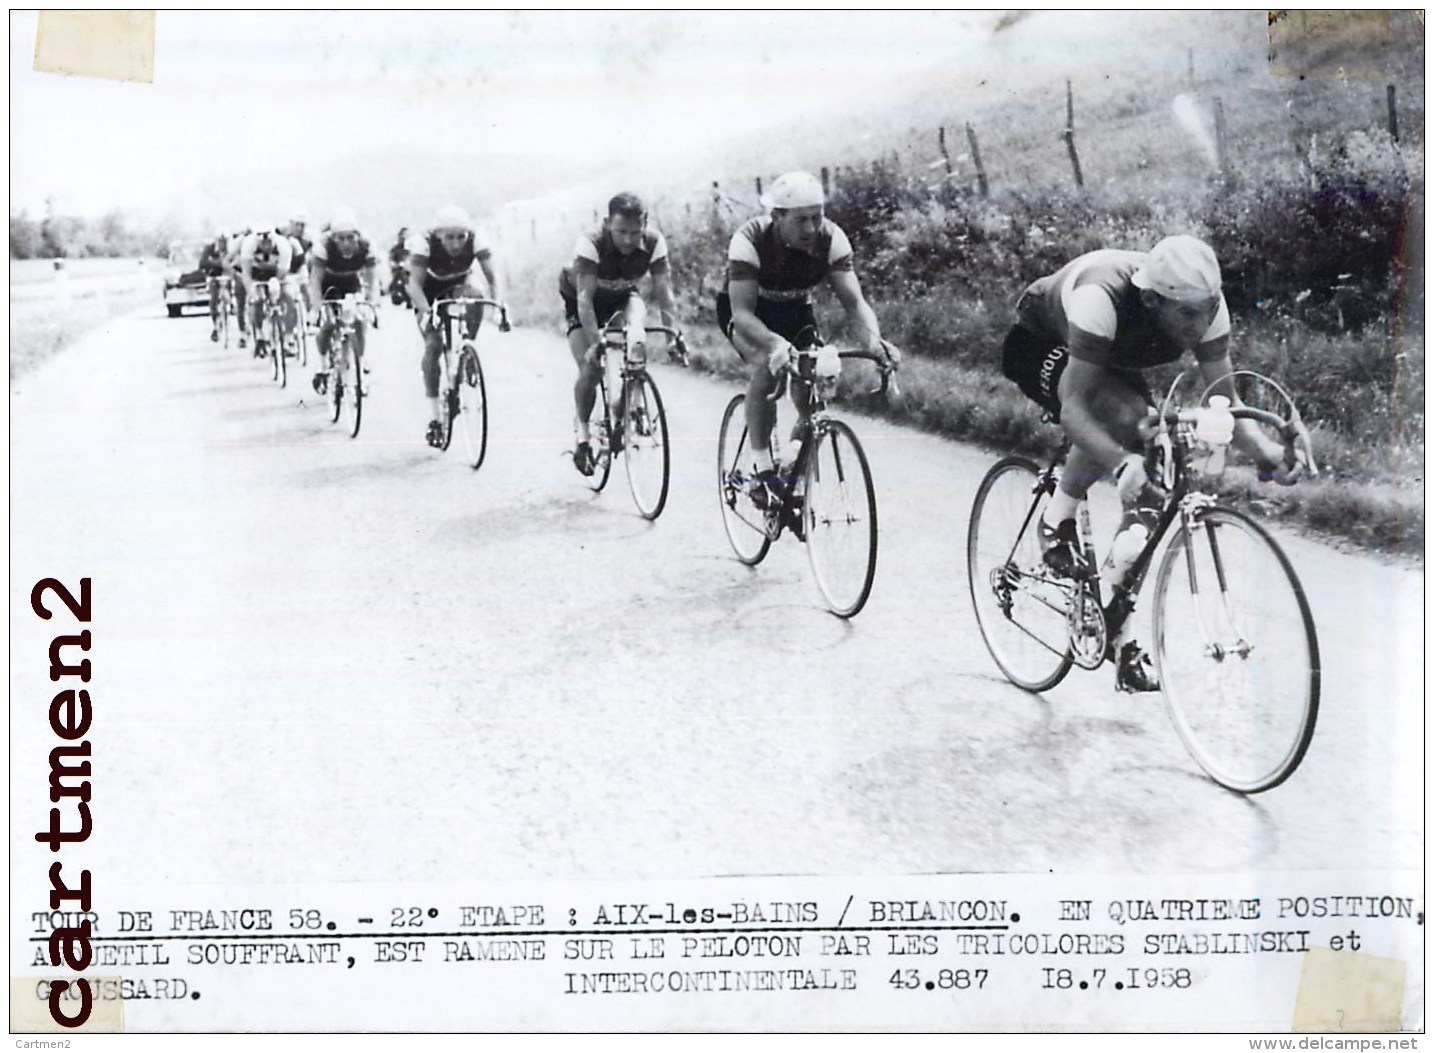 TOUR DE FRANCE 1958 AIX LES BAINS BRIANCON ANQUETIL STABLINSKI GROUSSARD CYCLISME VELO - Sports